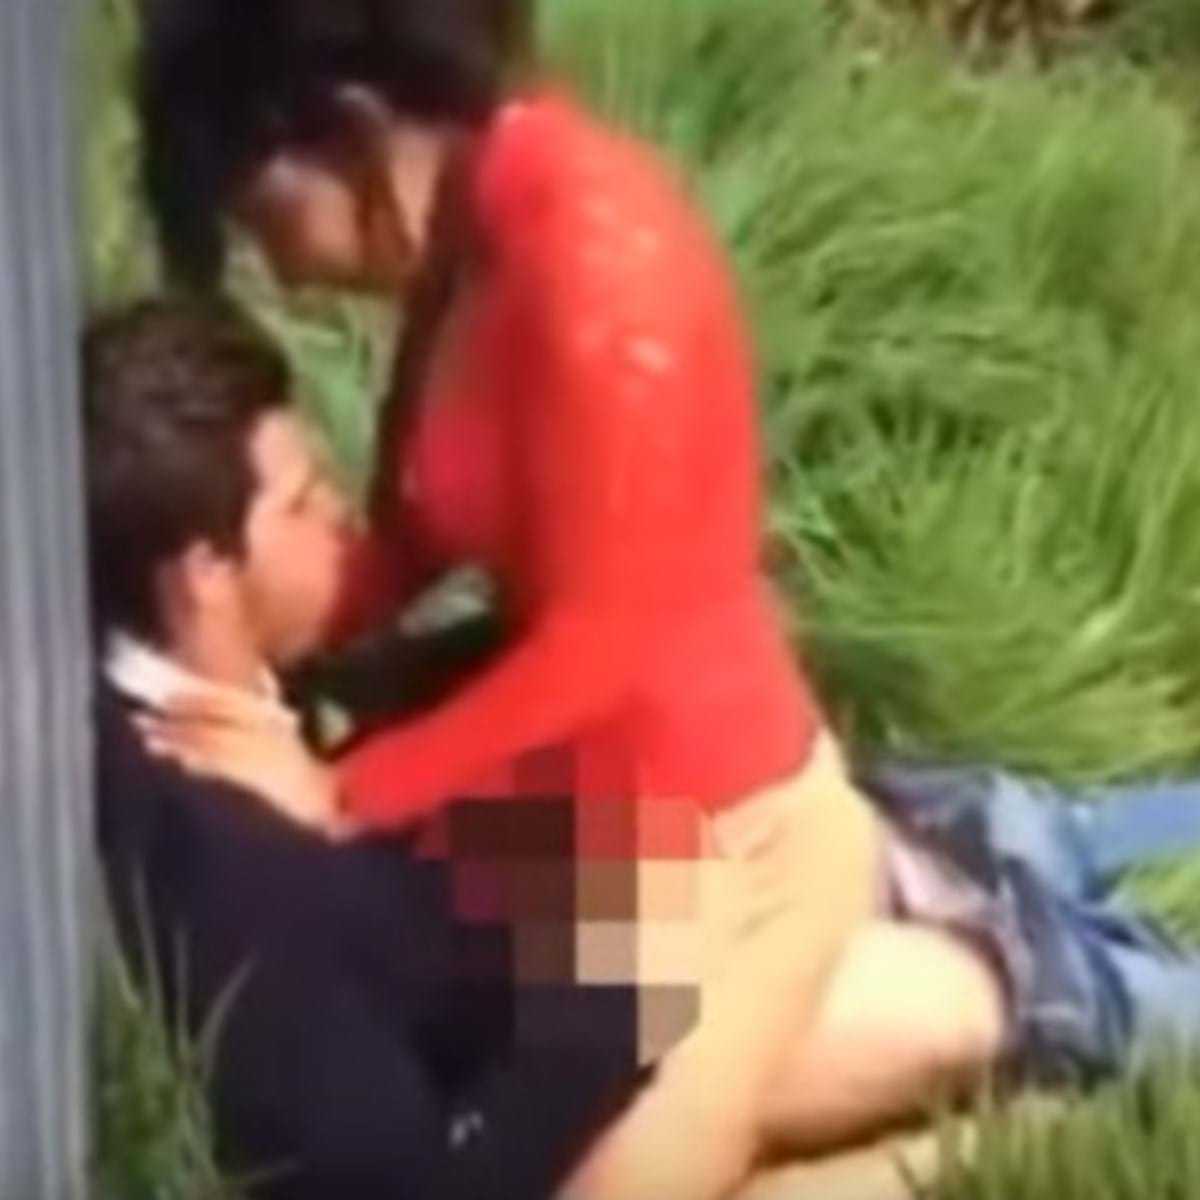 Casal filmado a fazer sexo atrás de barraca de cerveja - Vídeos foto imagem foto